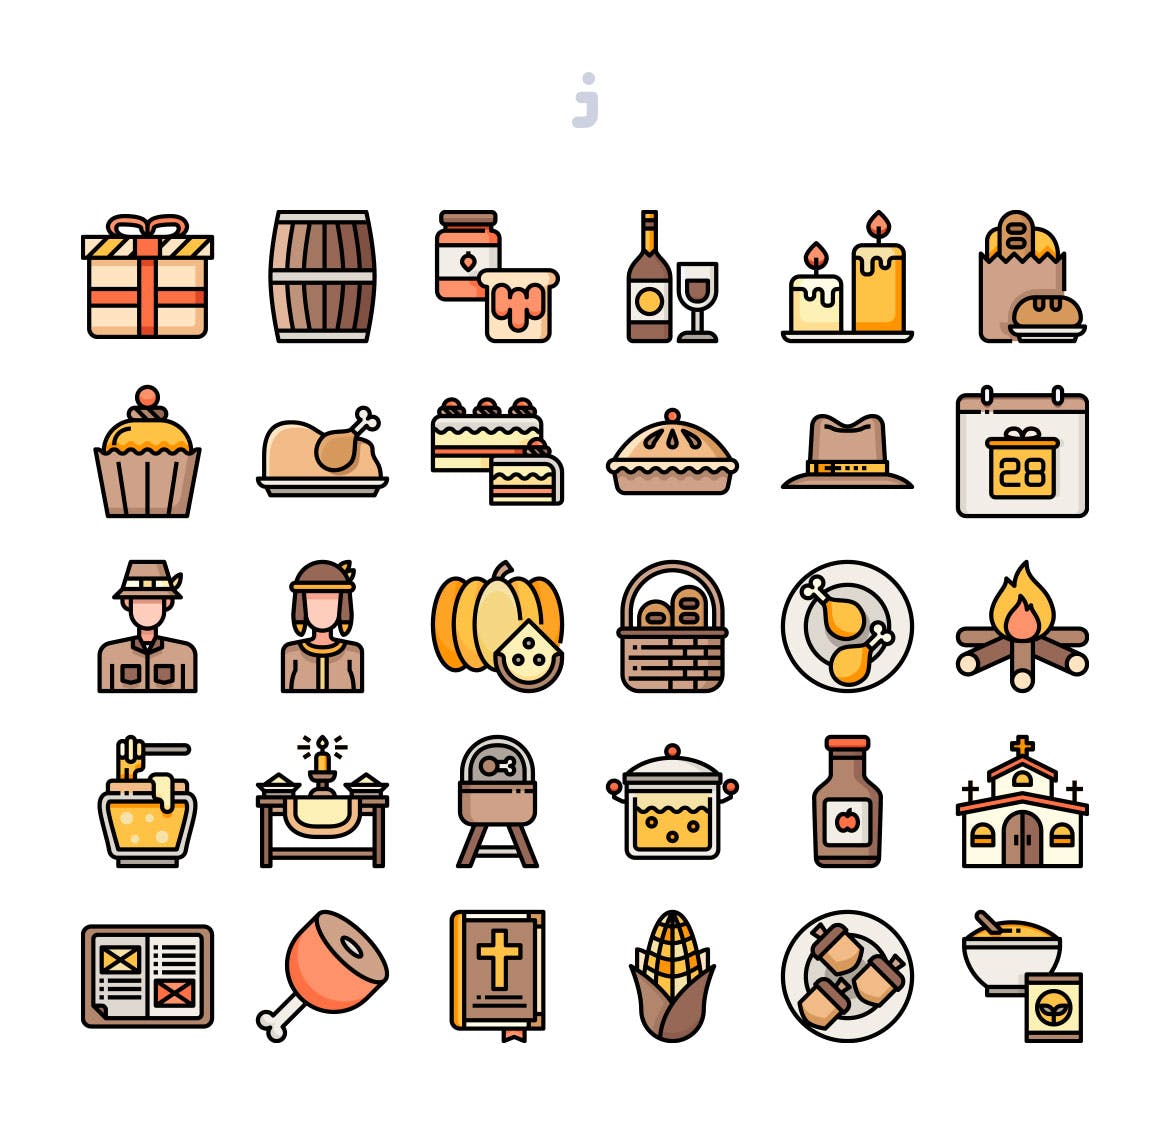 30枚感恩节节日主题矢量图标 30 Thanksgiving Icons插图(1)